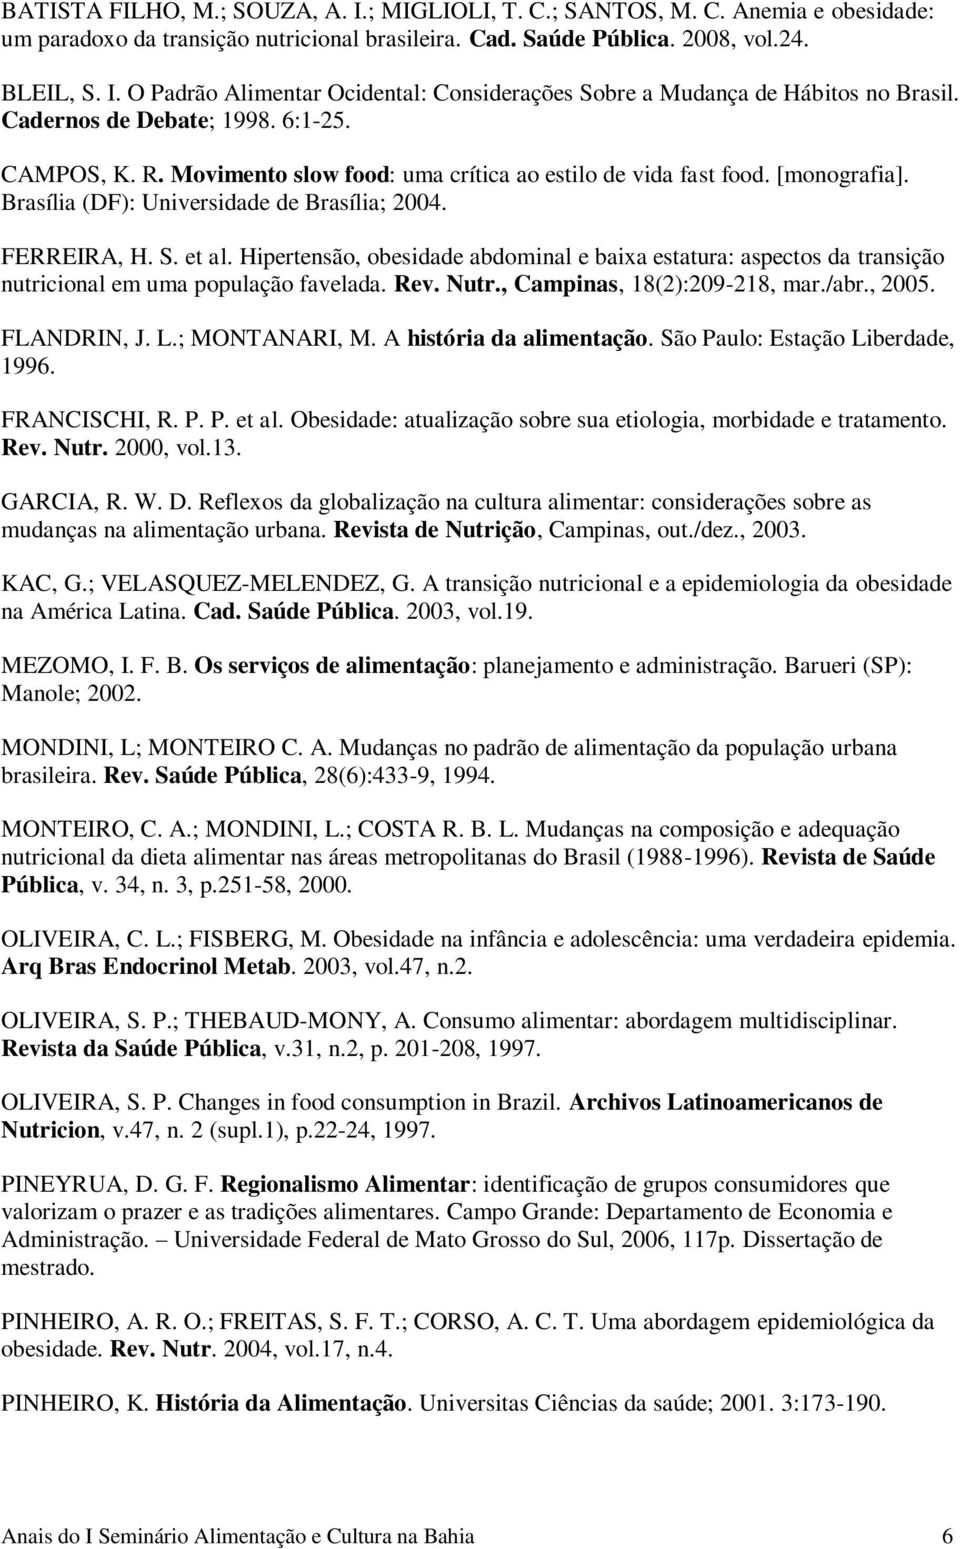 Hipertensão, obesidade abdominal e baixa estatura: aspectos da transição nutricional em uma população favelada. Rev. Nutr., Campinas, 18(2):209-218, mar./abr., 2005. FLANDRIN, J. L.; MONTANARI, M.